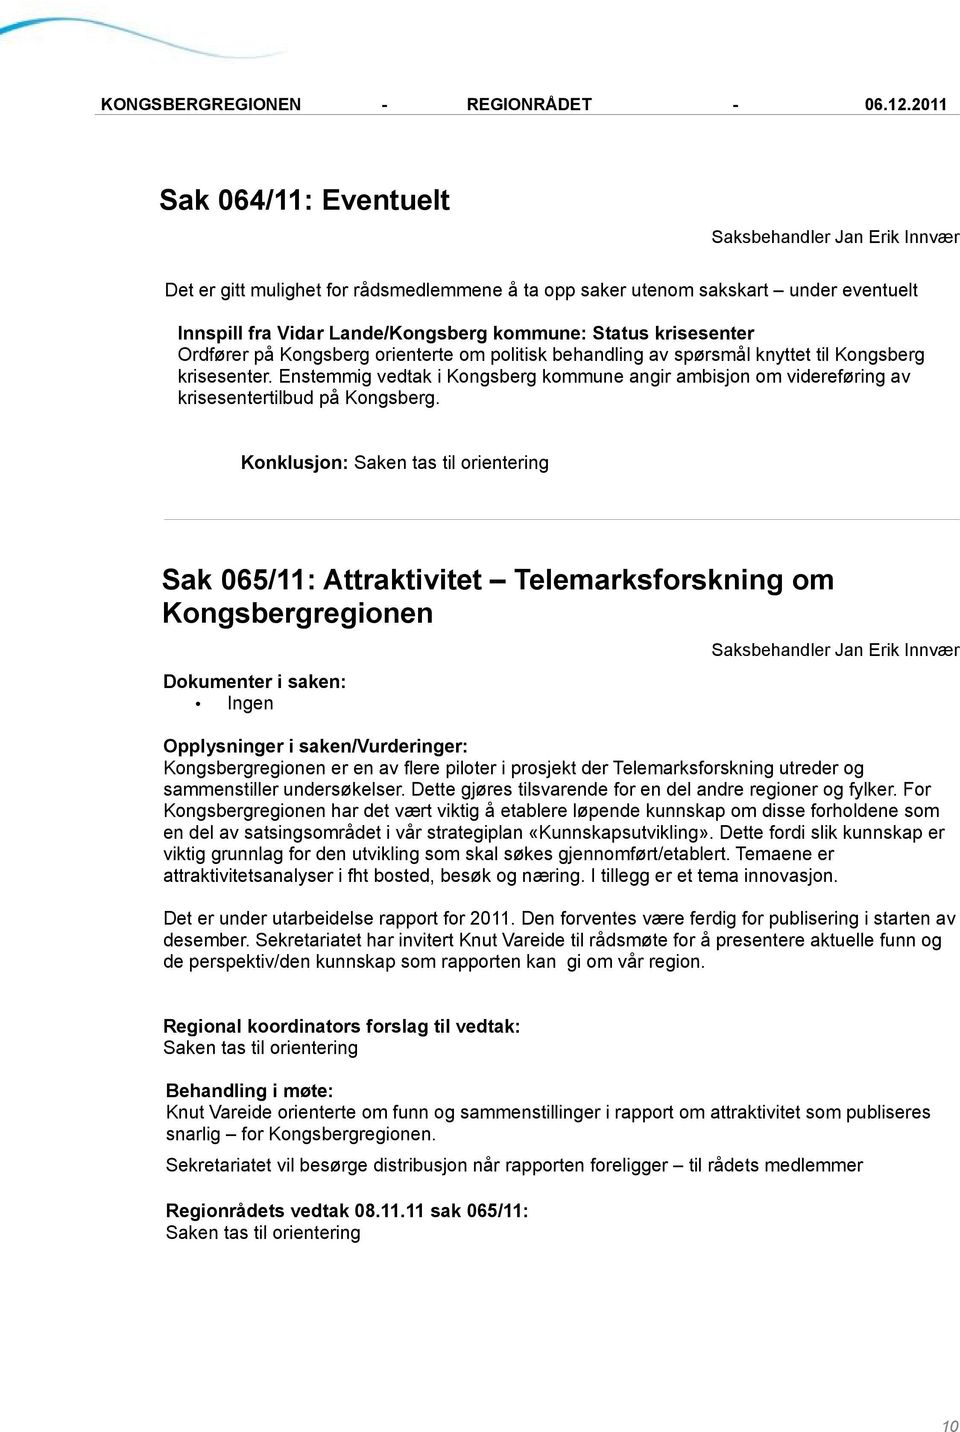 Konklusjon: Sak 065/11: Attraktivitet Telemarksforskning om Kongsbergregionen Ingen Kongsbergregionen er en av flere piloter i prosjekt der Telemarksforskning utreder og sammenstiller undersøkelser.